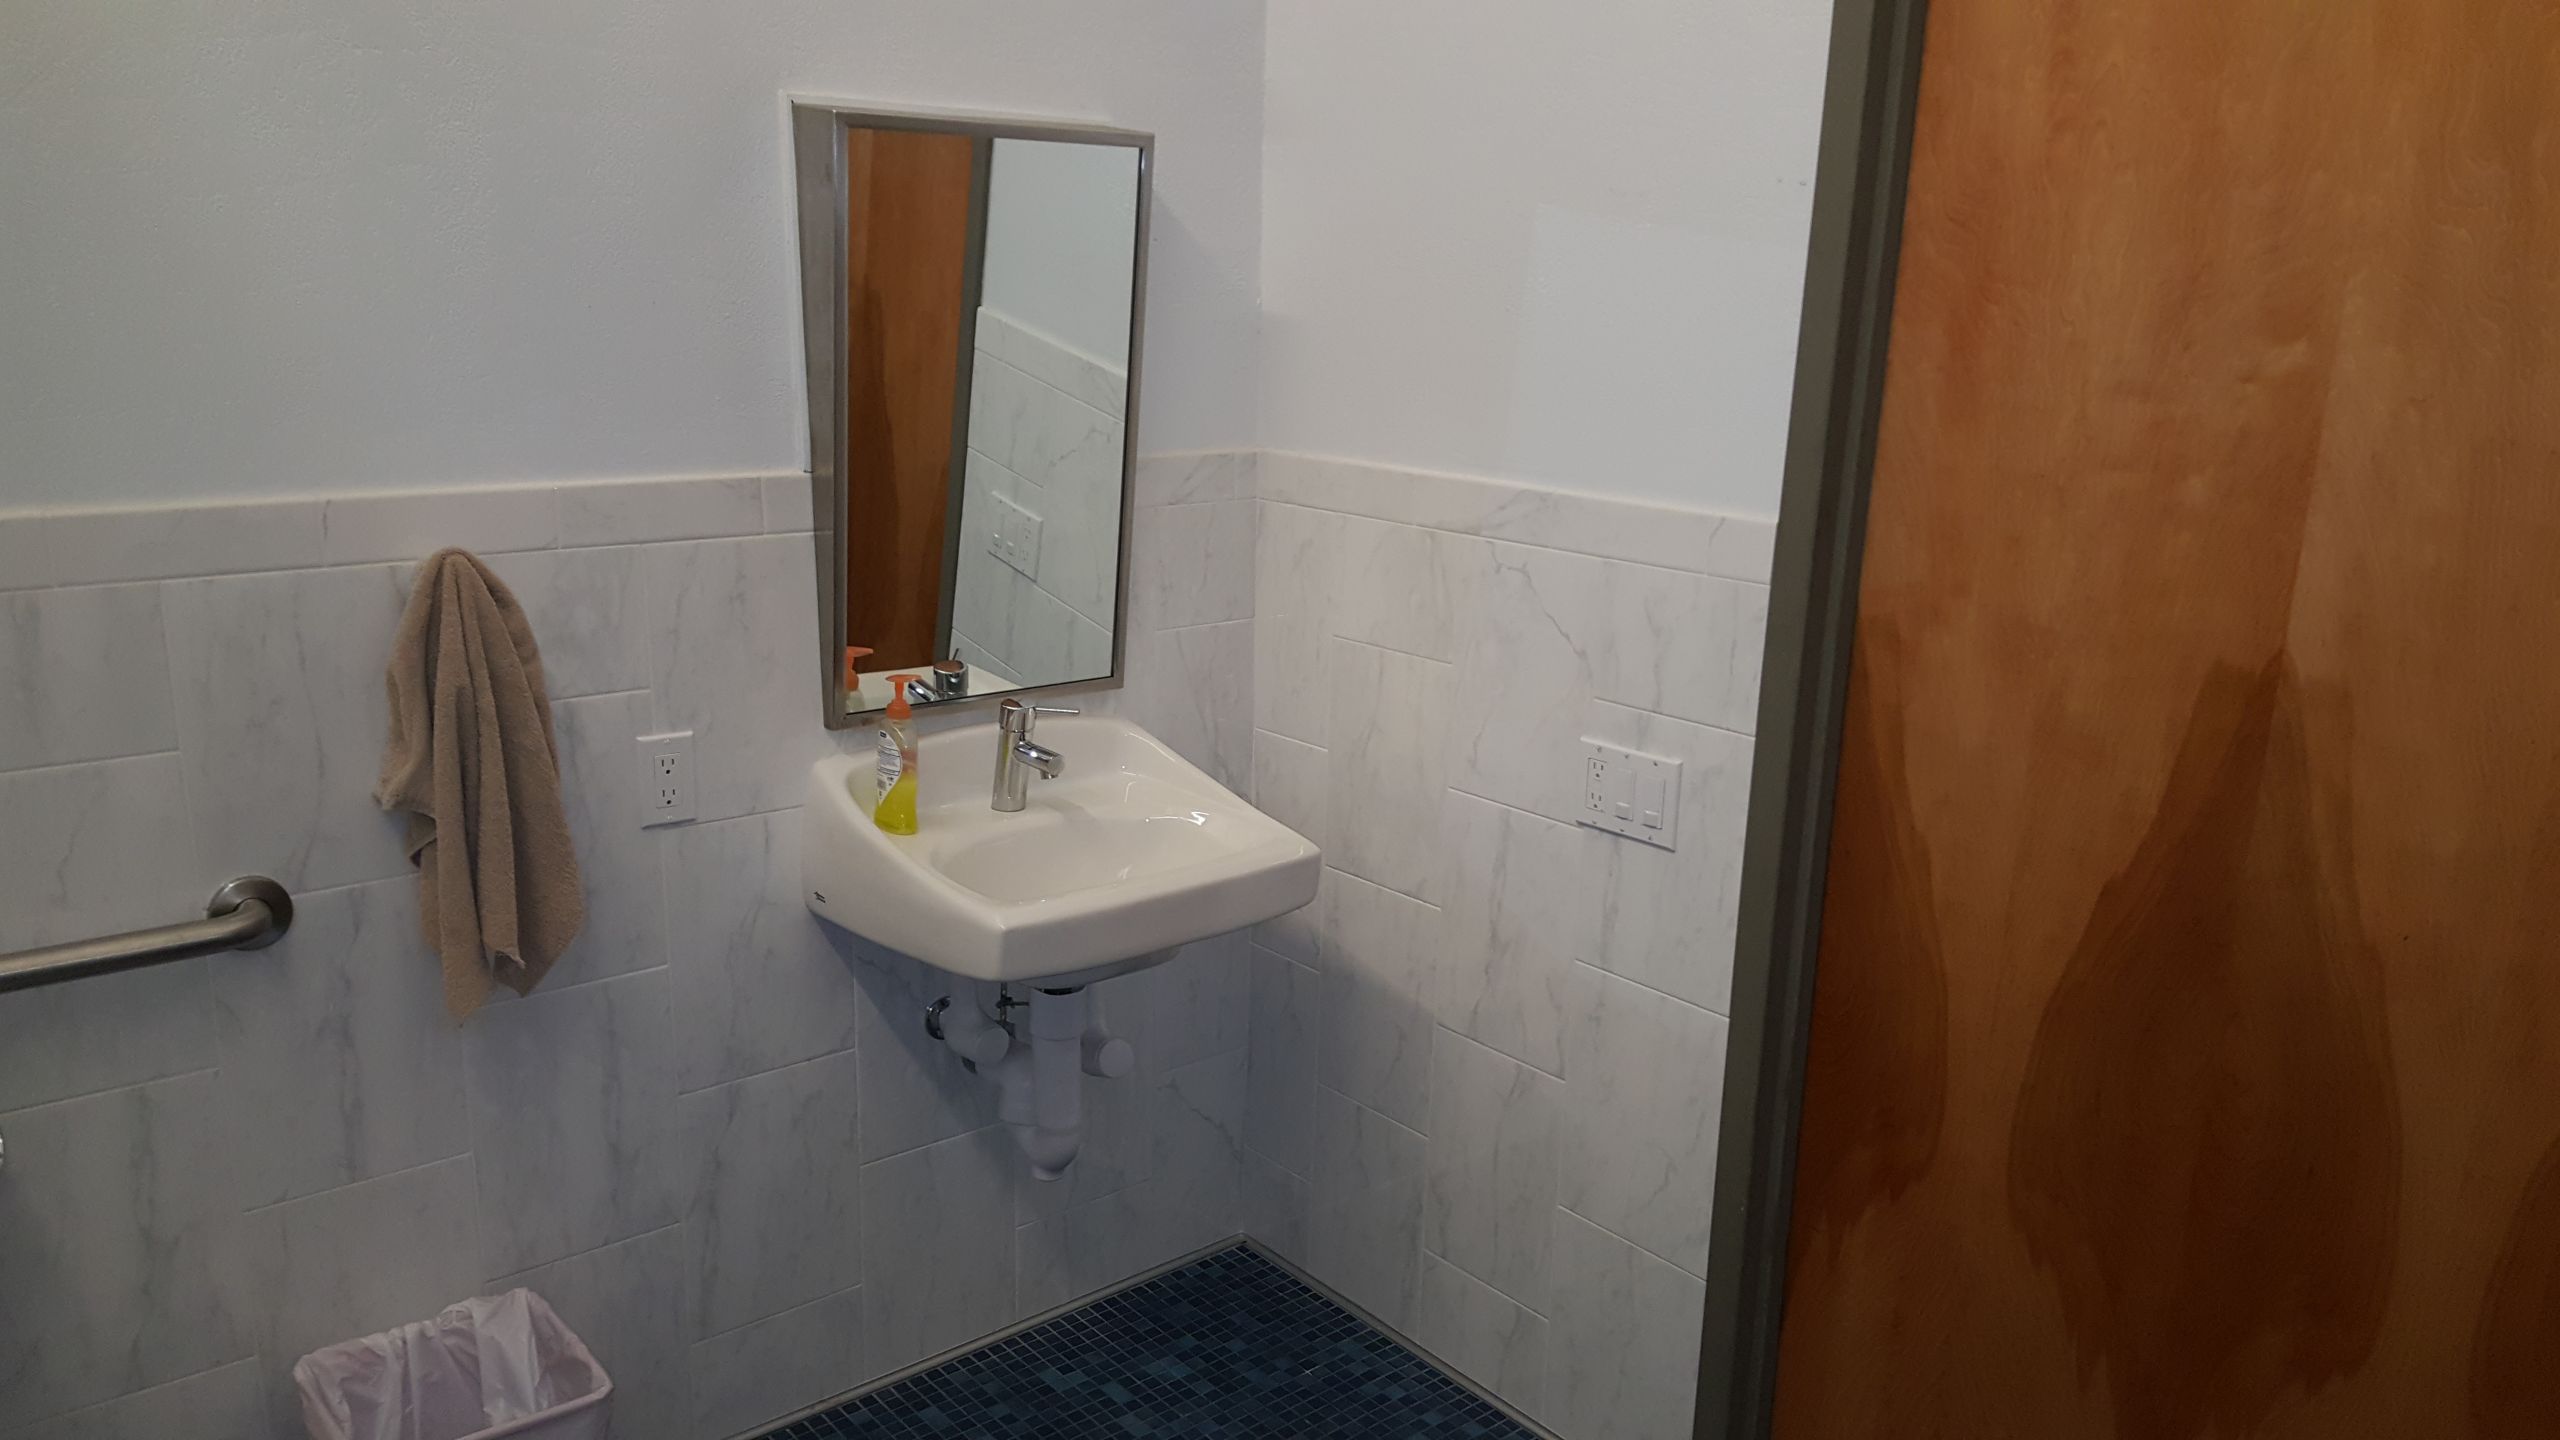 Ada Bathroom Mirror Height
 Ada Mirror Height Bathroom